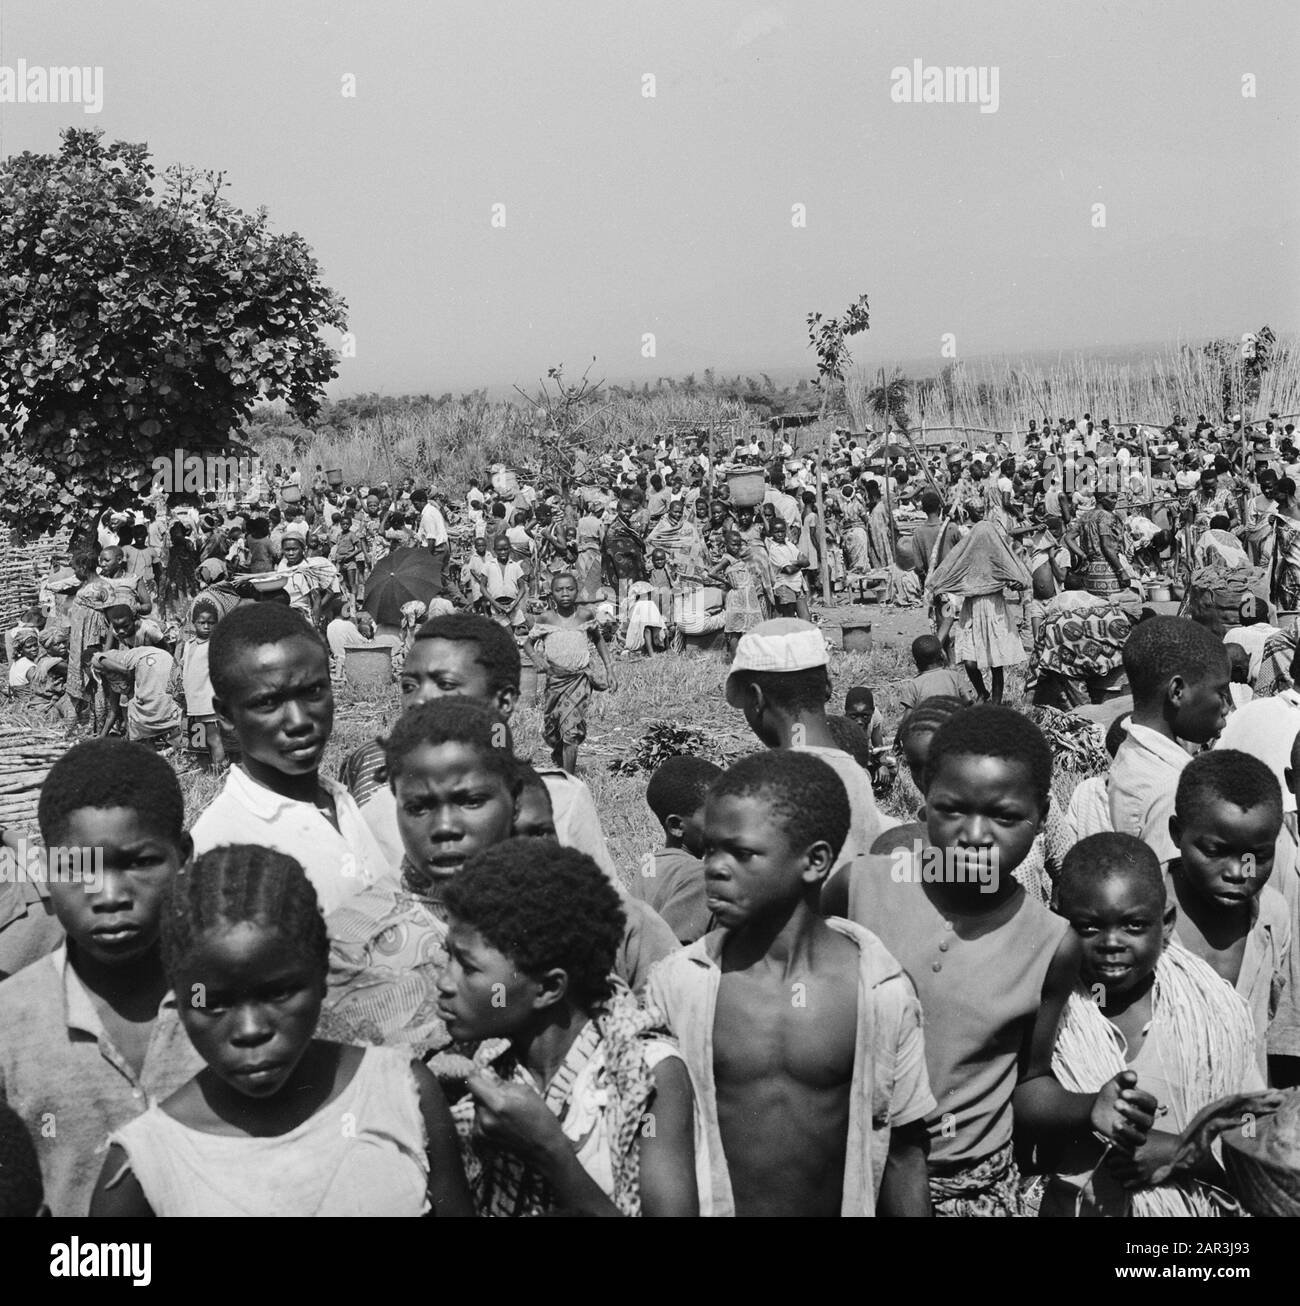 Zaire (ehemals Belgischer Kongo) Menschen auf dem Land Datum: 24. Oktober 1973 Ort: Kongo, Zaire Schlüsselwörter: Landschaften, Menschenmassen Stockfoto